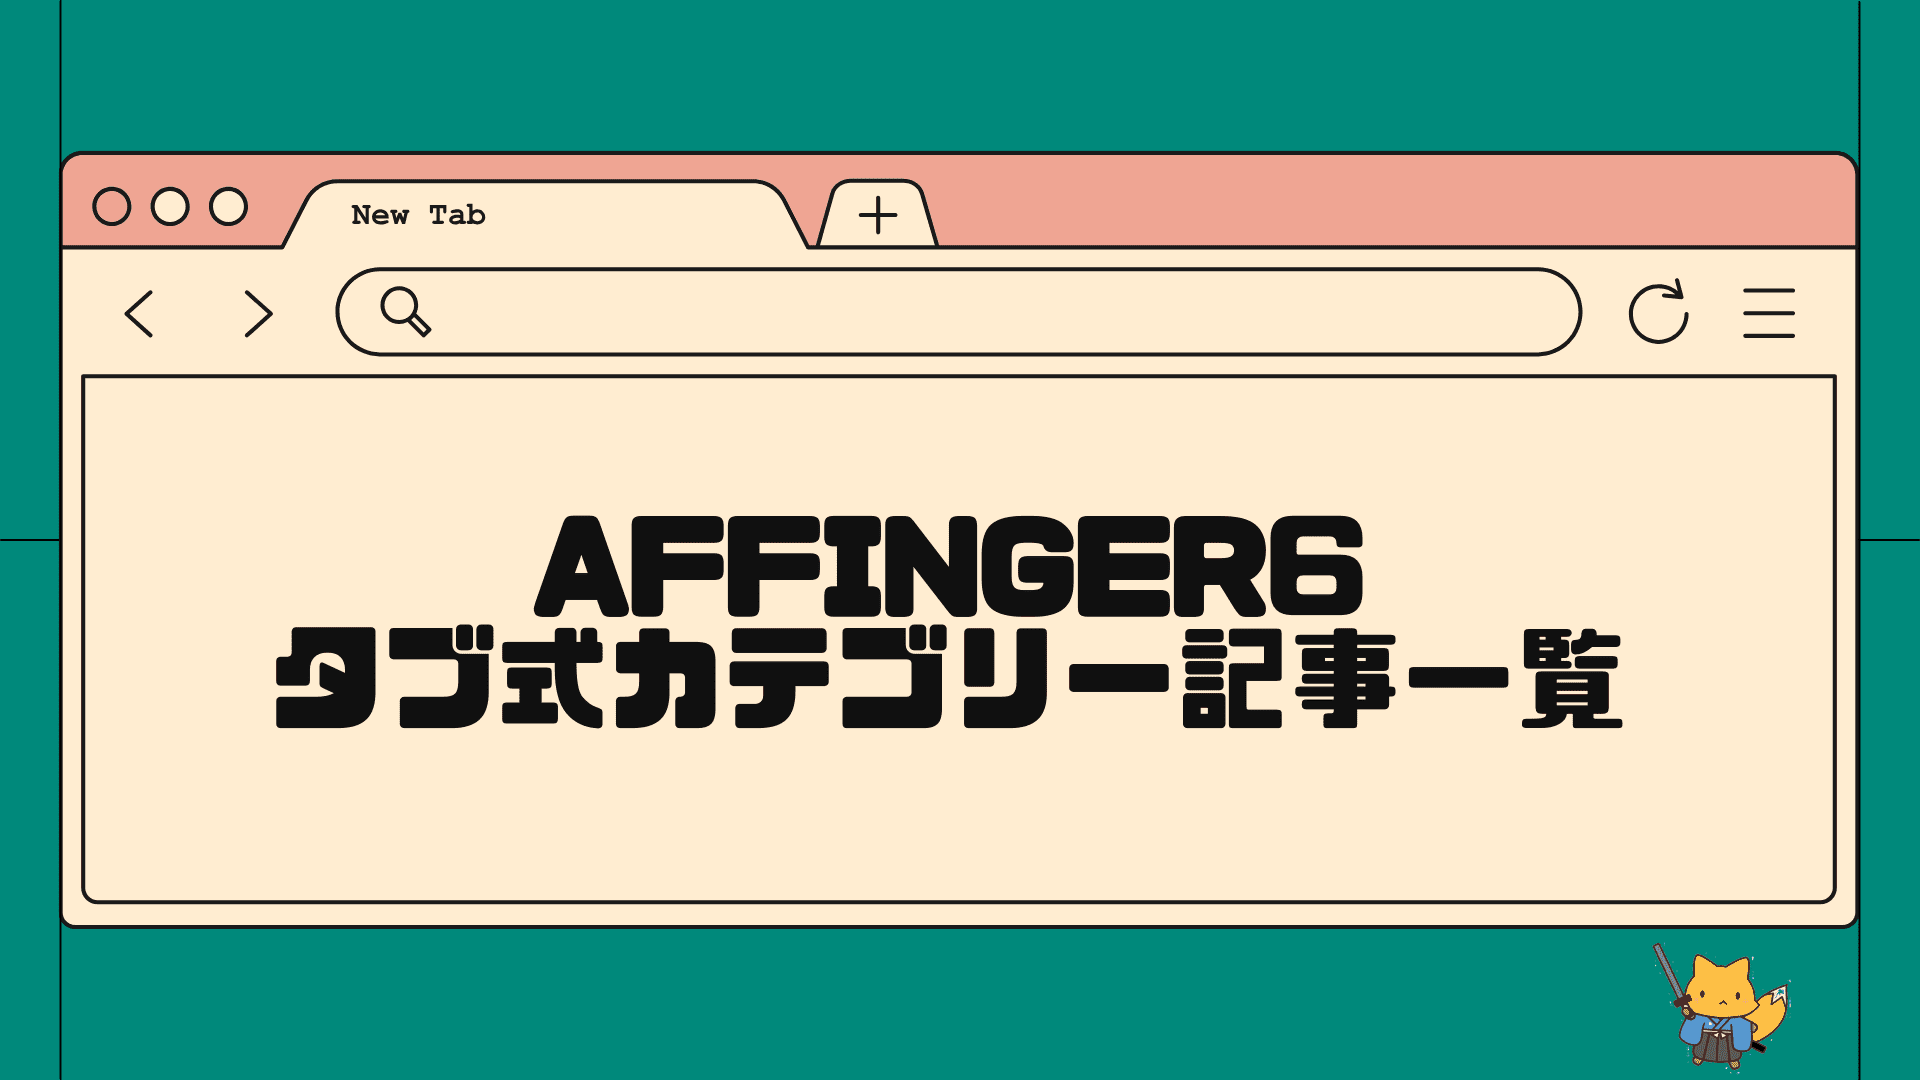 AFFINGER6でタブ式カテゴリー記事一覧の設定